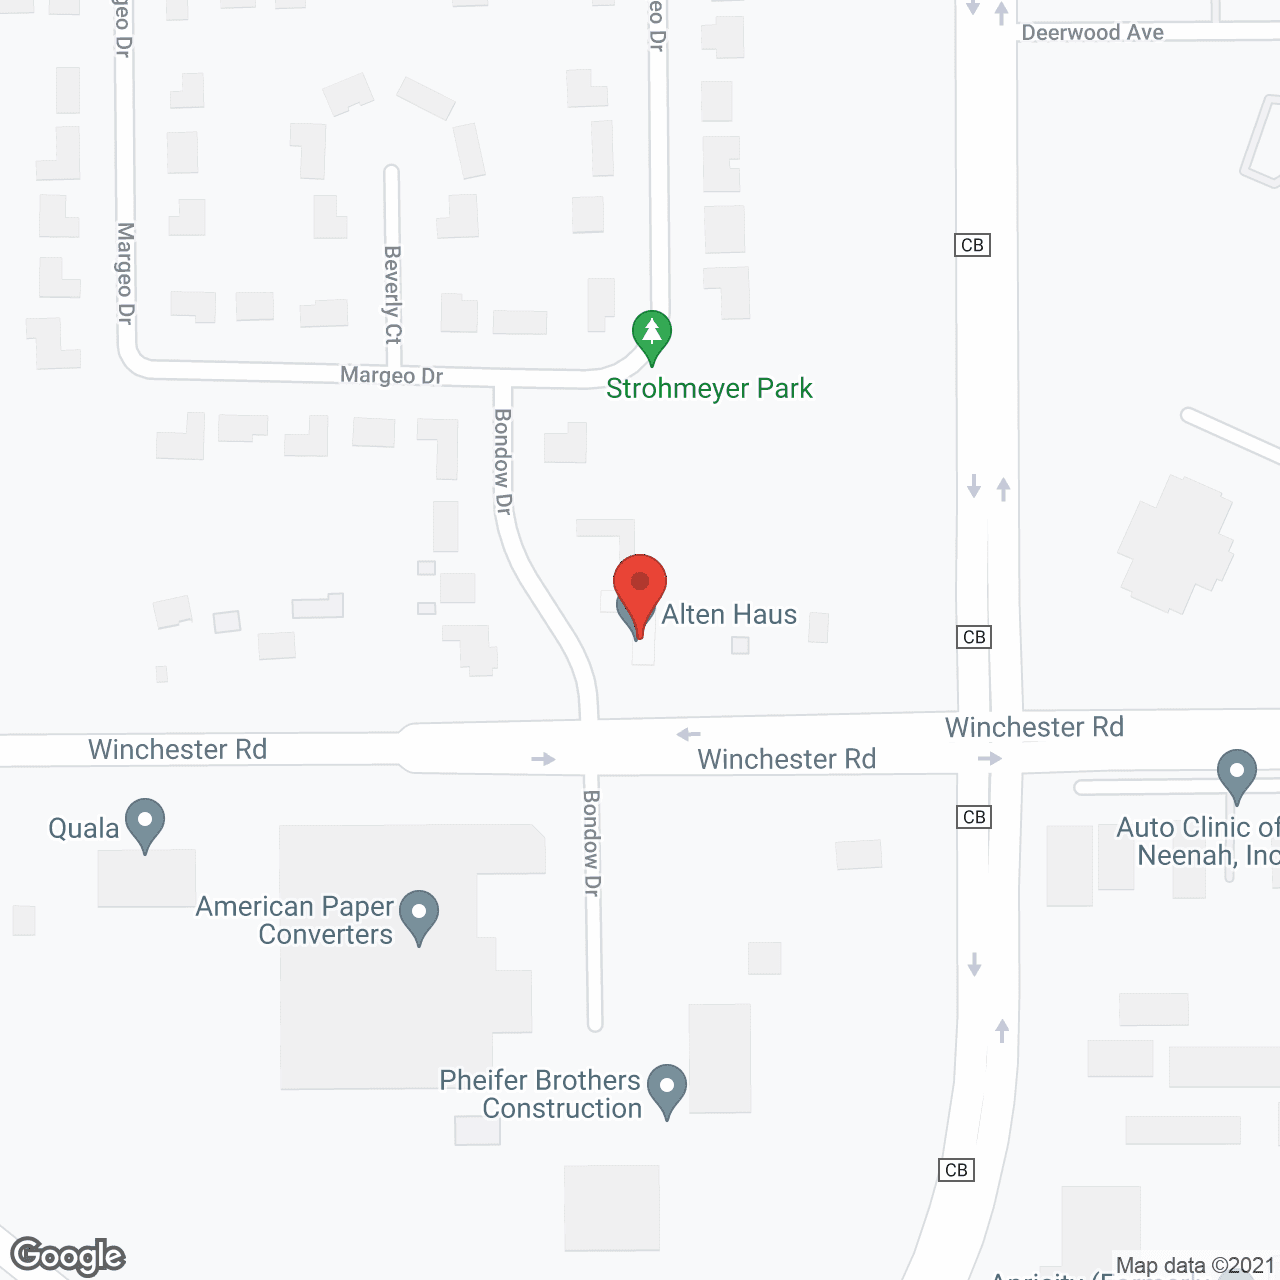 Alten Haus in google map